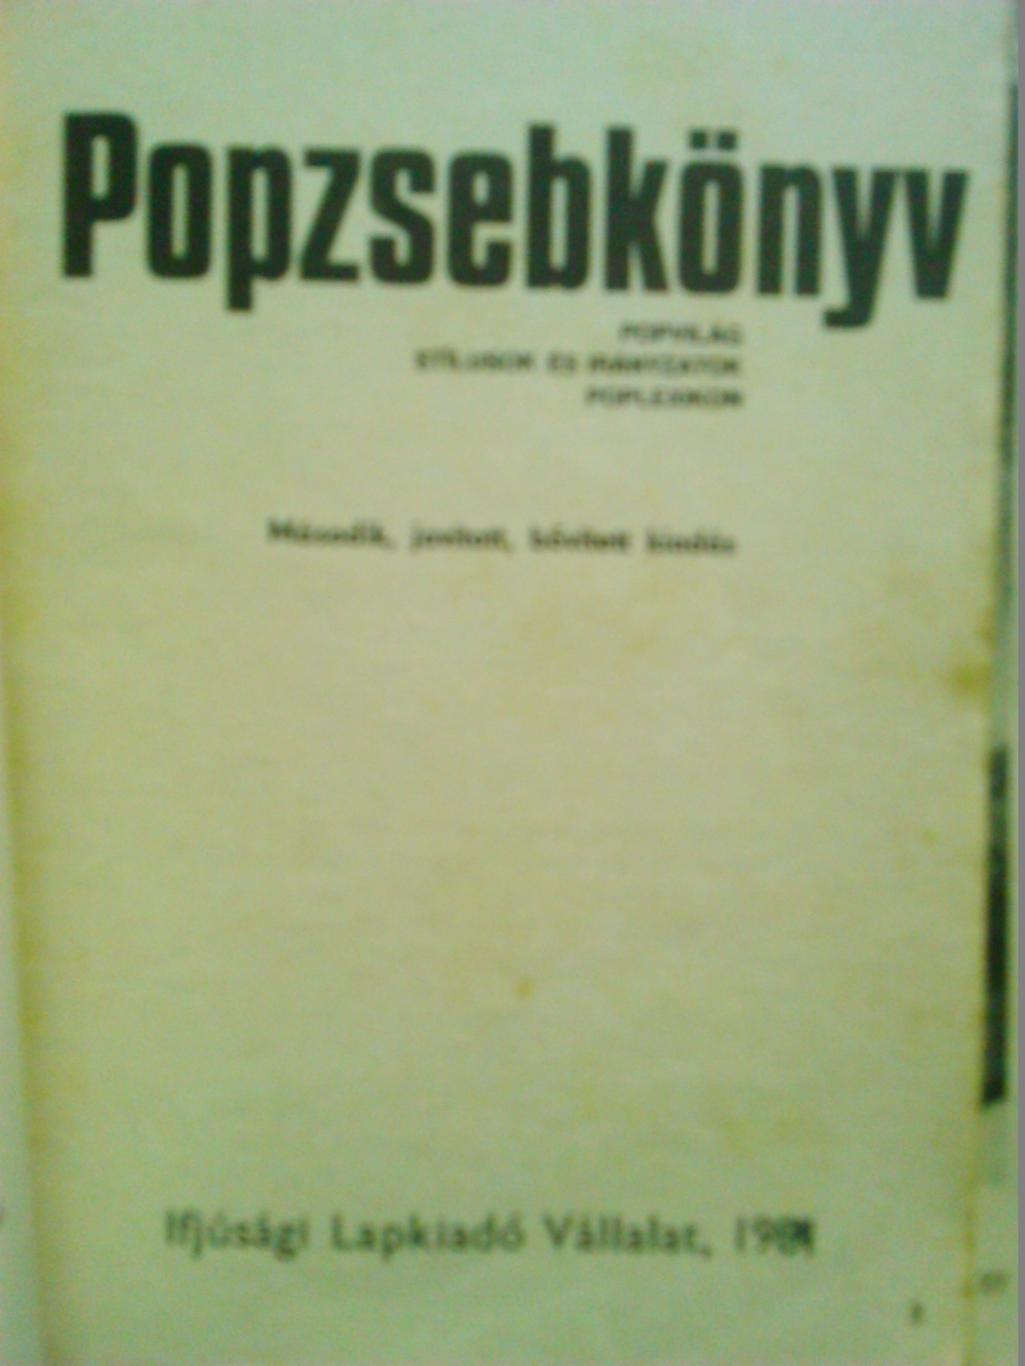 книга POPZSEBKONYV (Поп энциклопедия) на венгерском. Гуртом знижки до 50%! 1